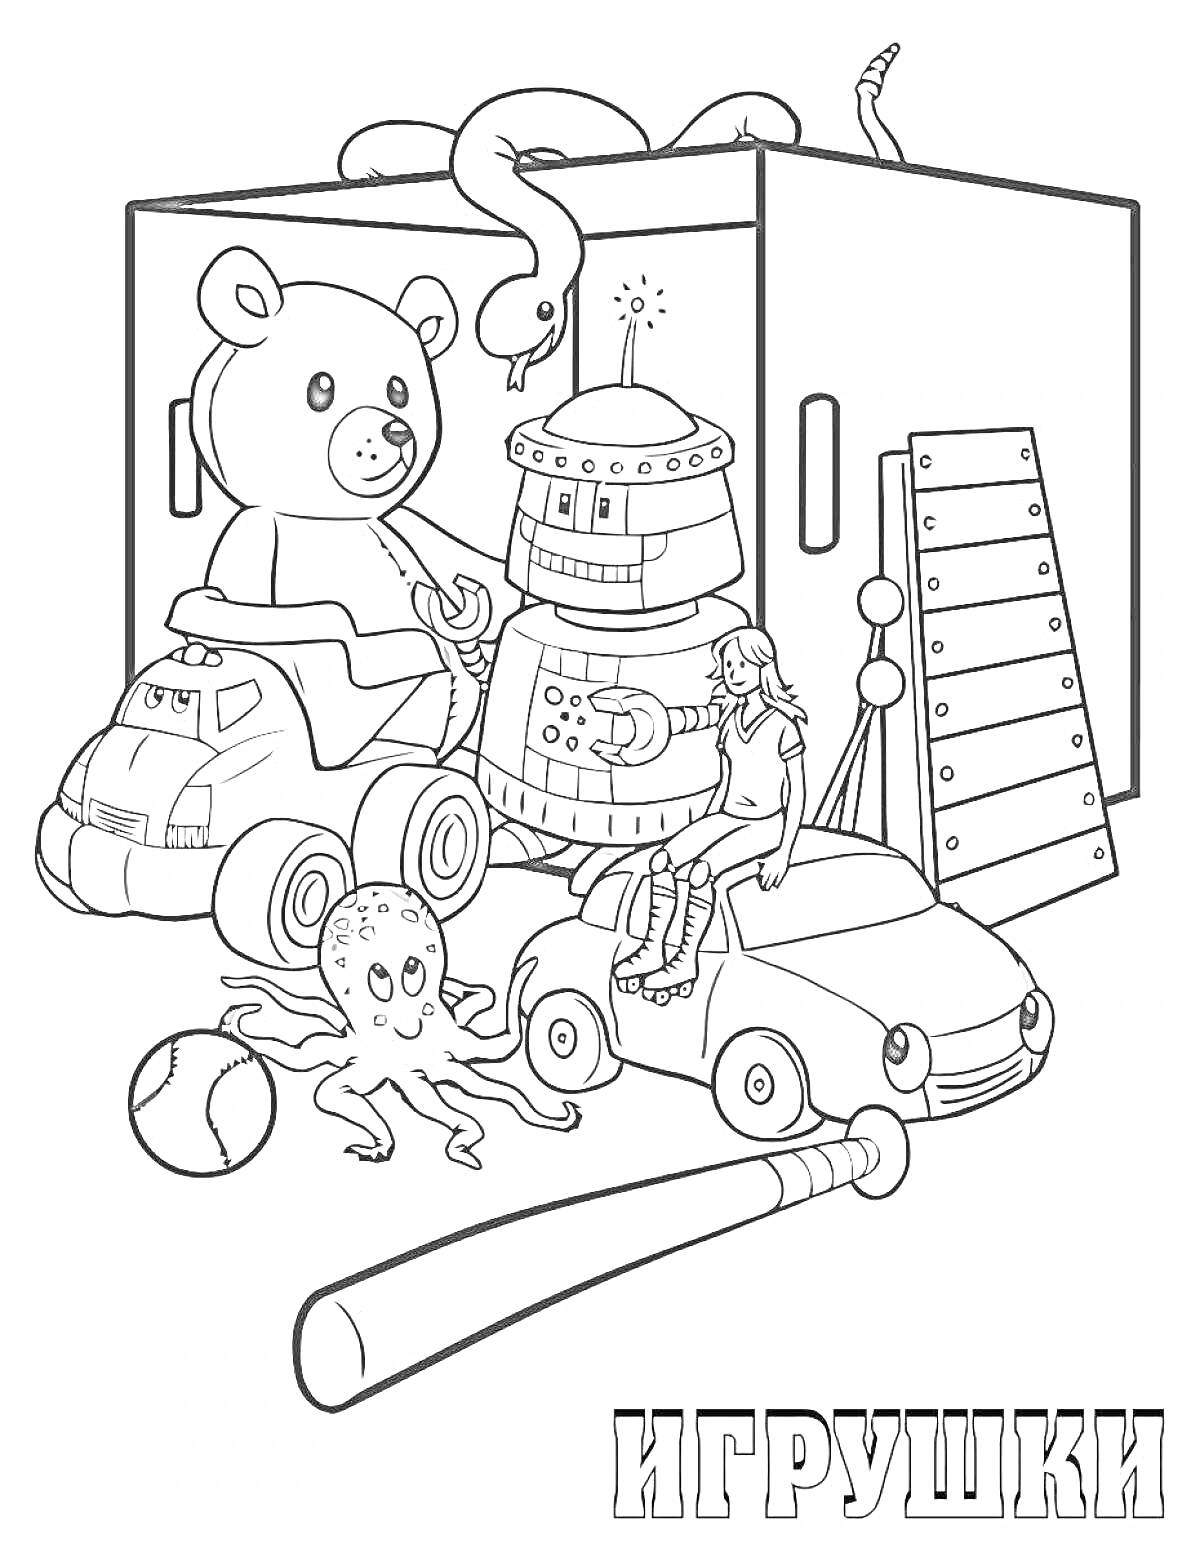 На раскраске изображено: Игрушки, Плюшевый медведь, Пожарная машина, Робот, Кукла, Ксилофон, Бита, Шкаф, Детские игрушки